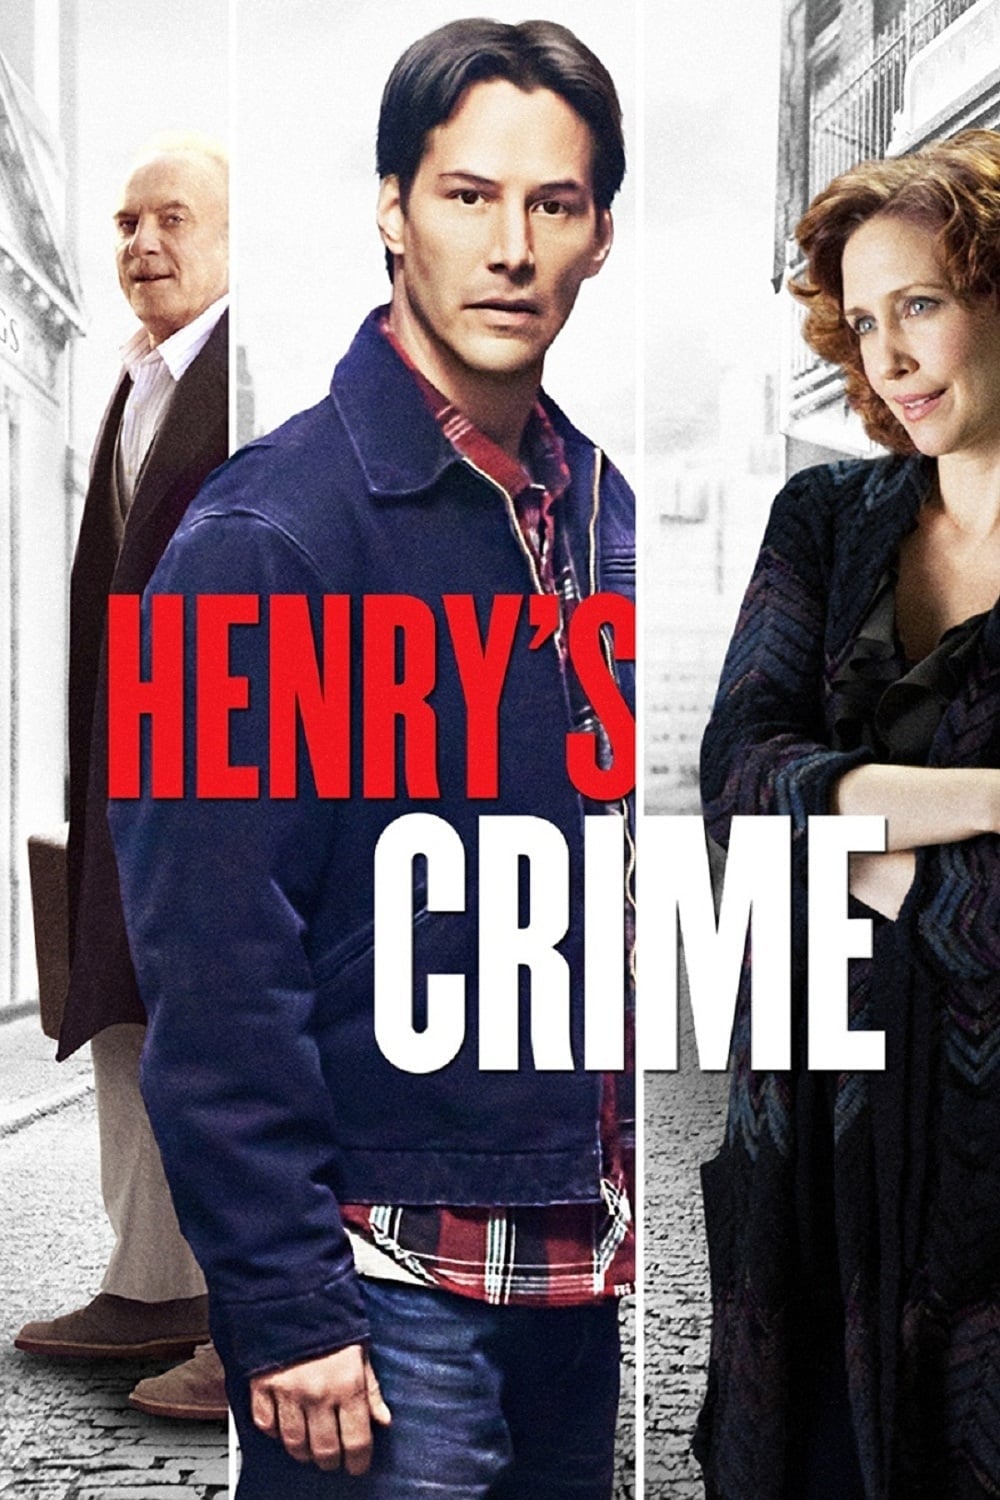 Plakat von "Henry & Julie"